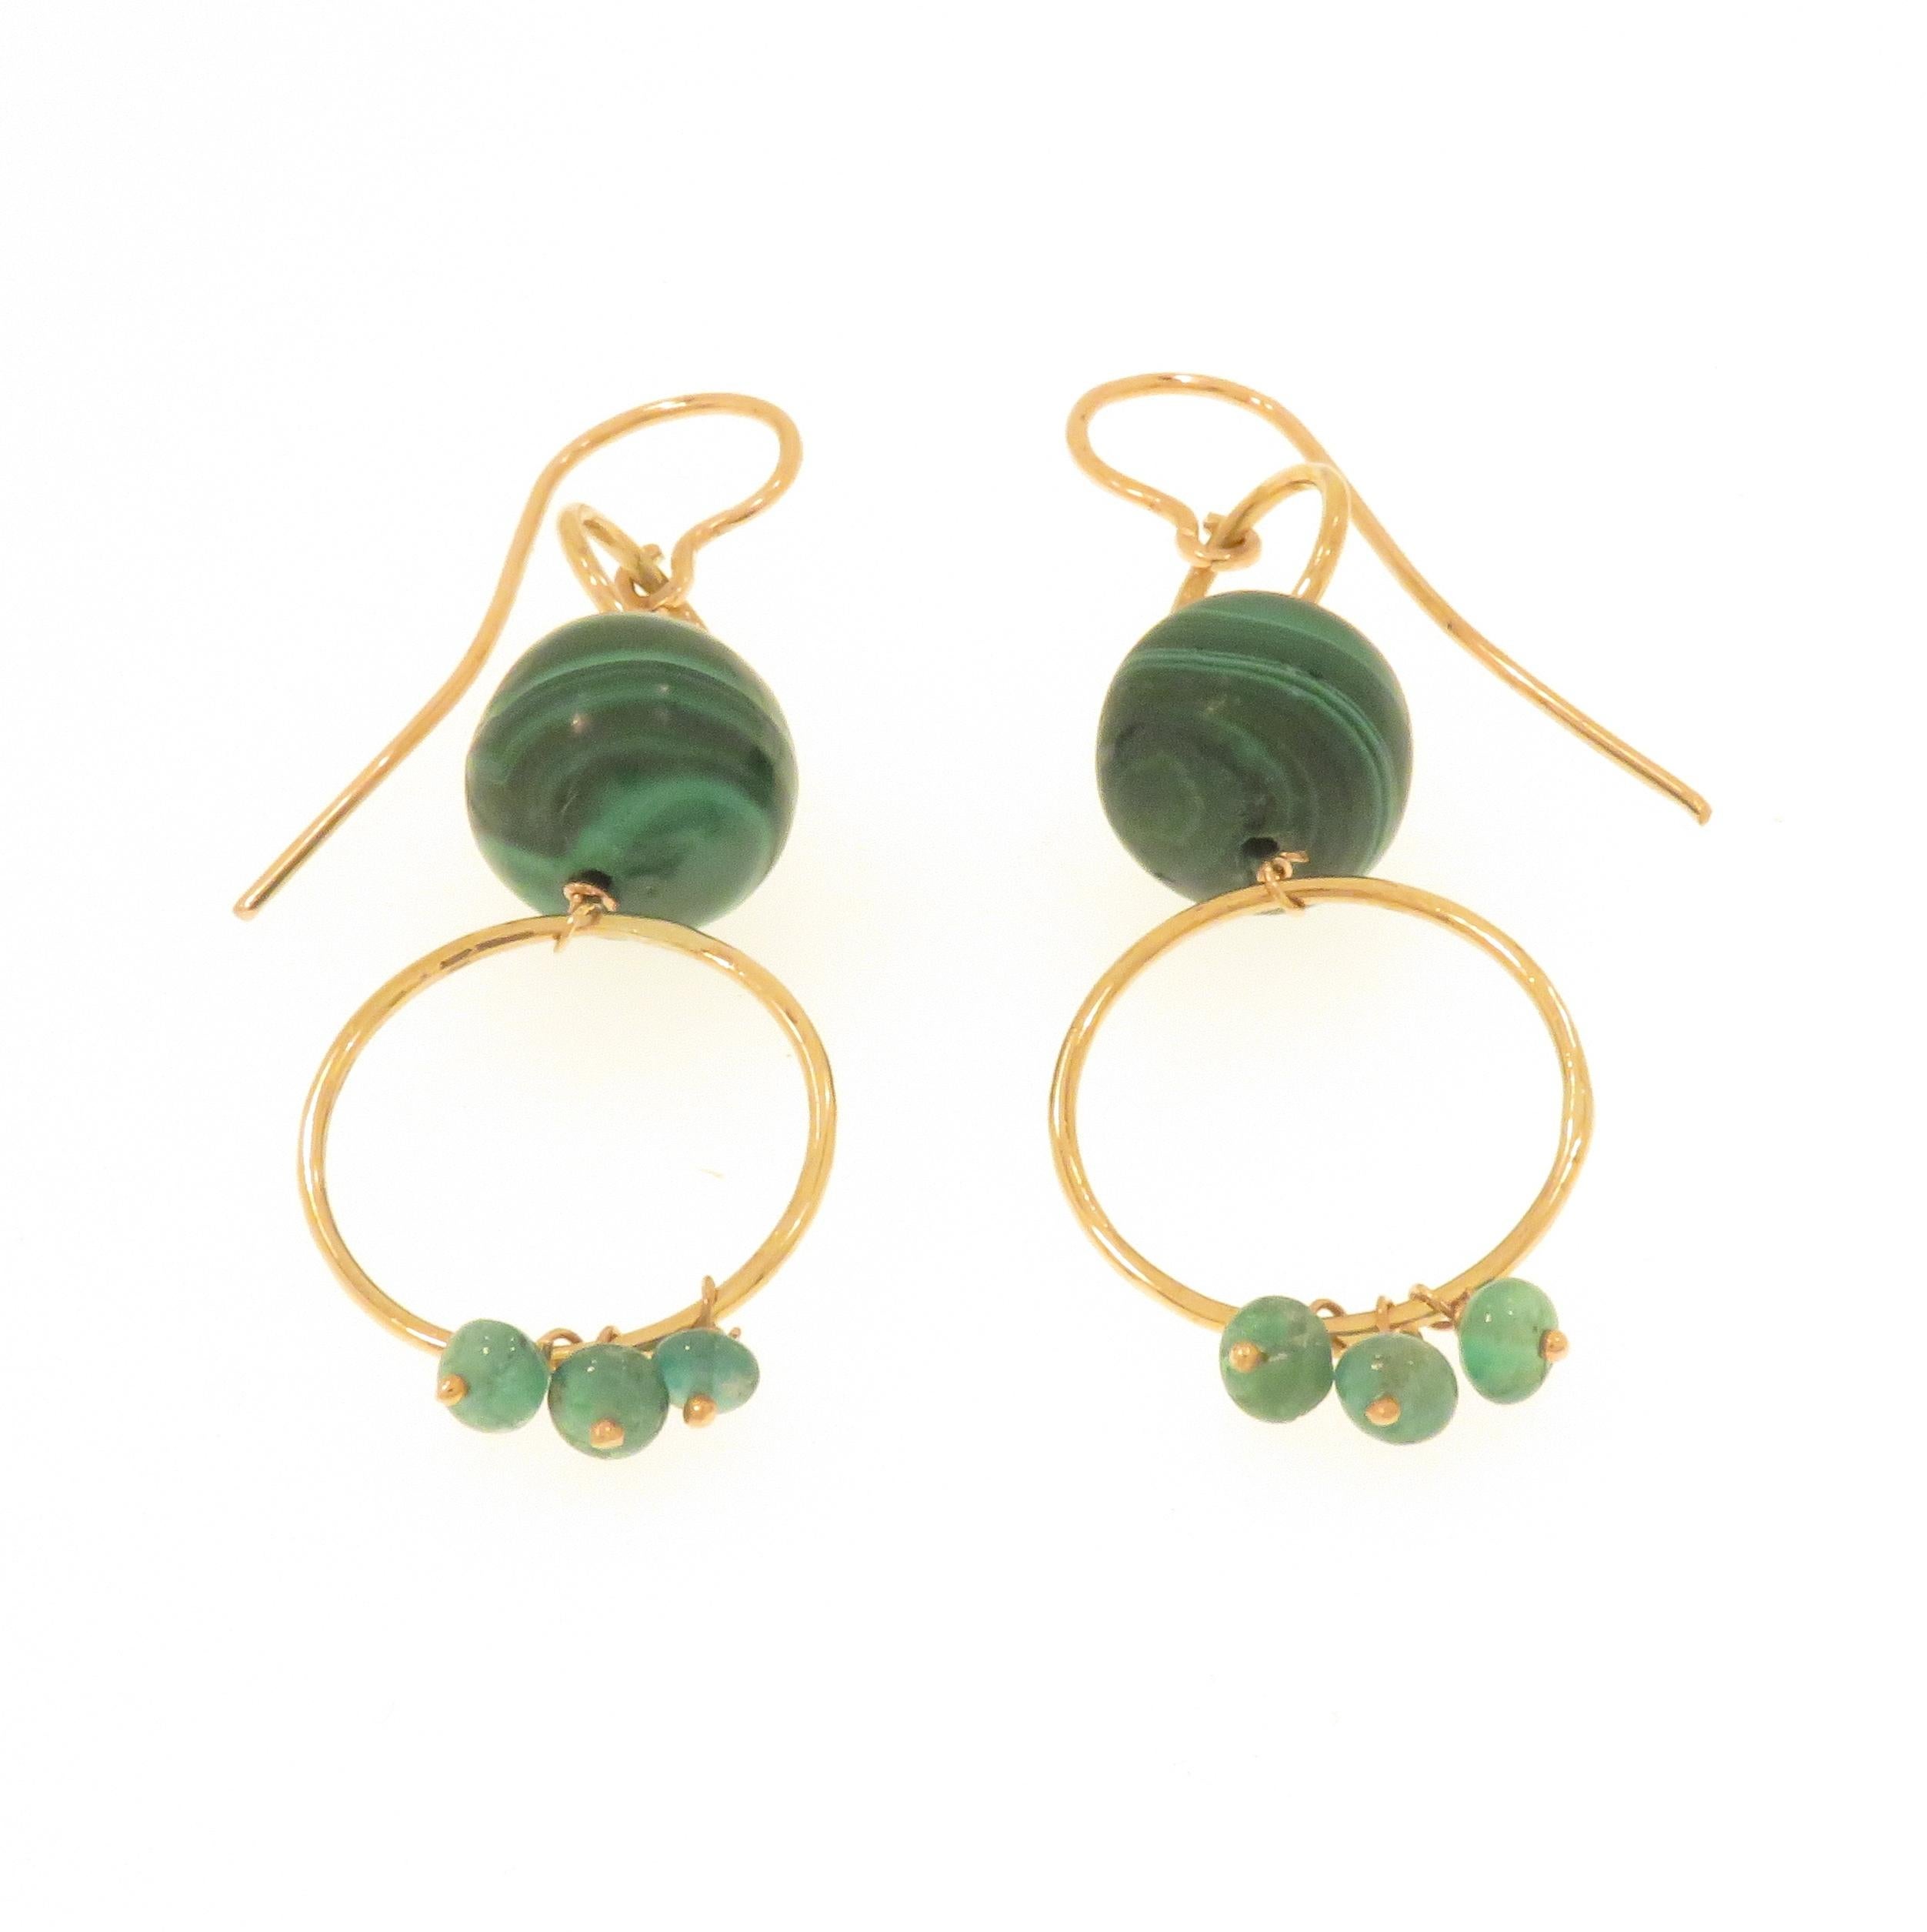 Ohrringe mit natürlichen Malachitperlen und 6 grünen Smaragden  kleine Perlen, handgefertigt aus 9 Karat Roségold. Die Gesamtlänge jedes Ohrrings beträgt 60 mm / 2,362 Zoll. Sie sind mit der italienischen Goldmarke 375 und der Marke Botta Gioielli